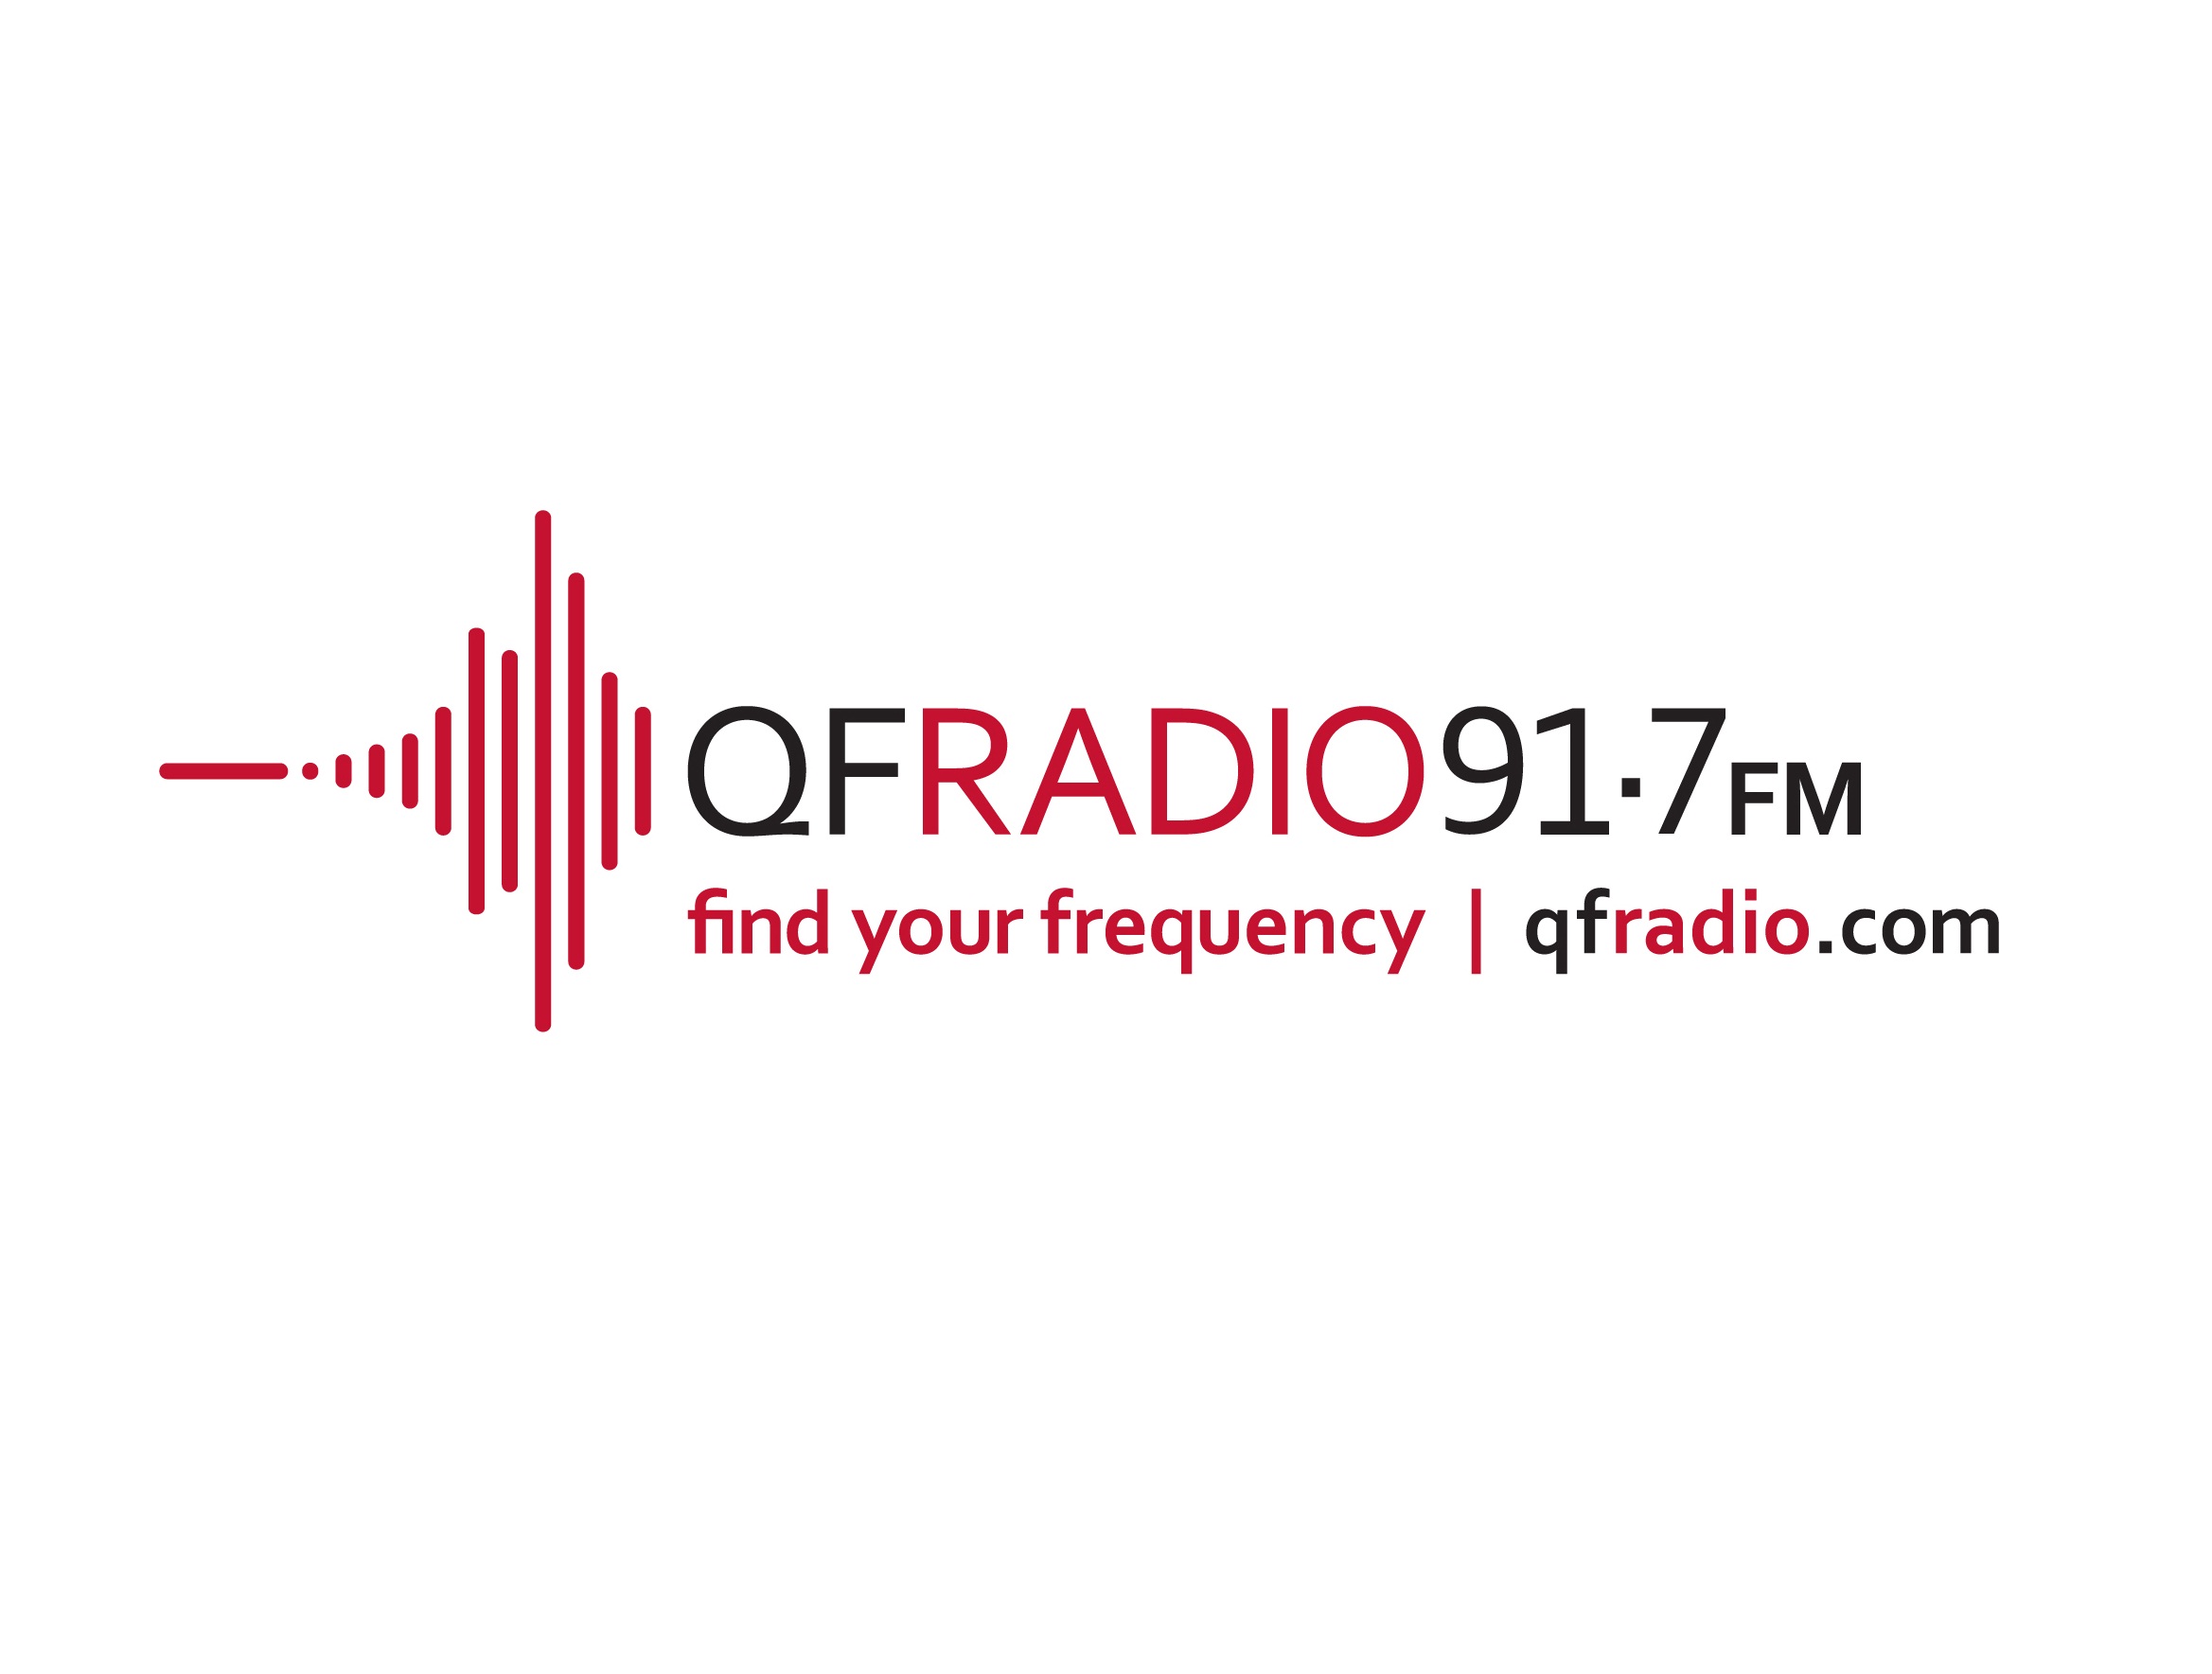 88.2 радио набережные челны логотип радио фото